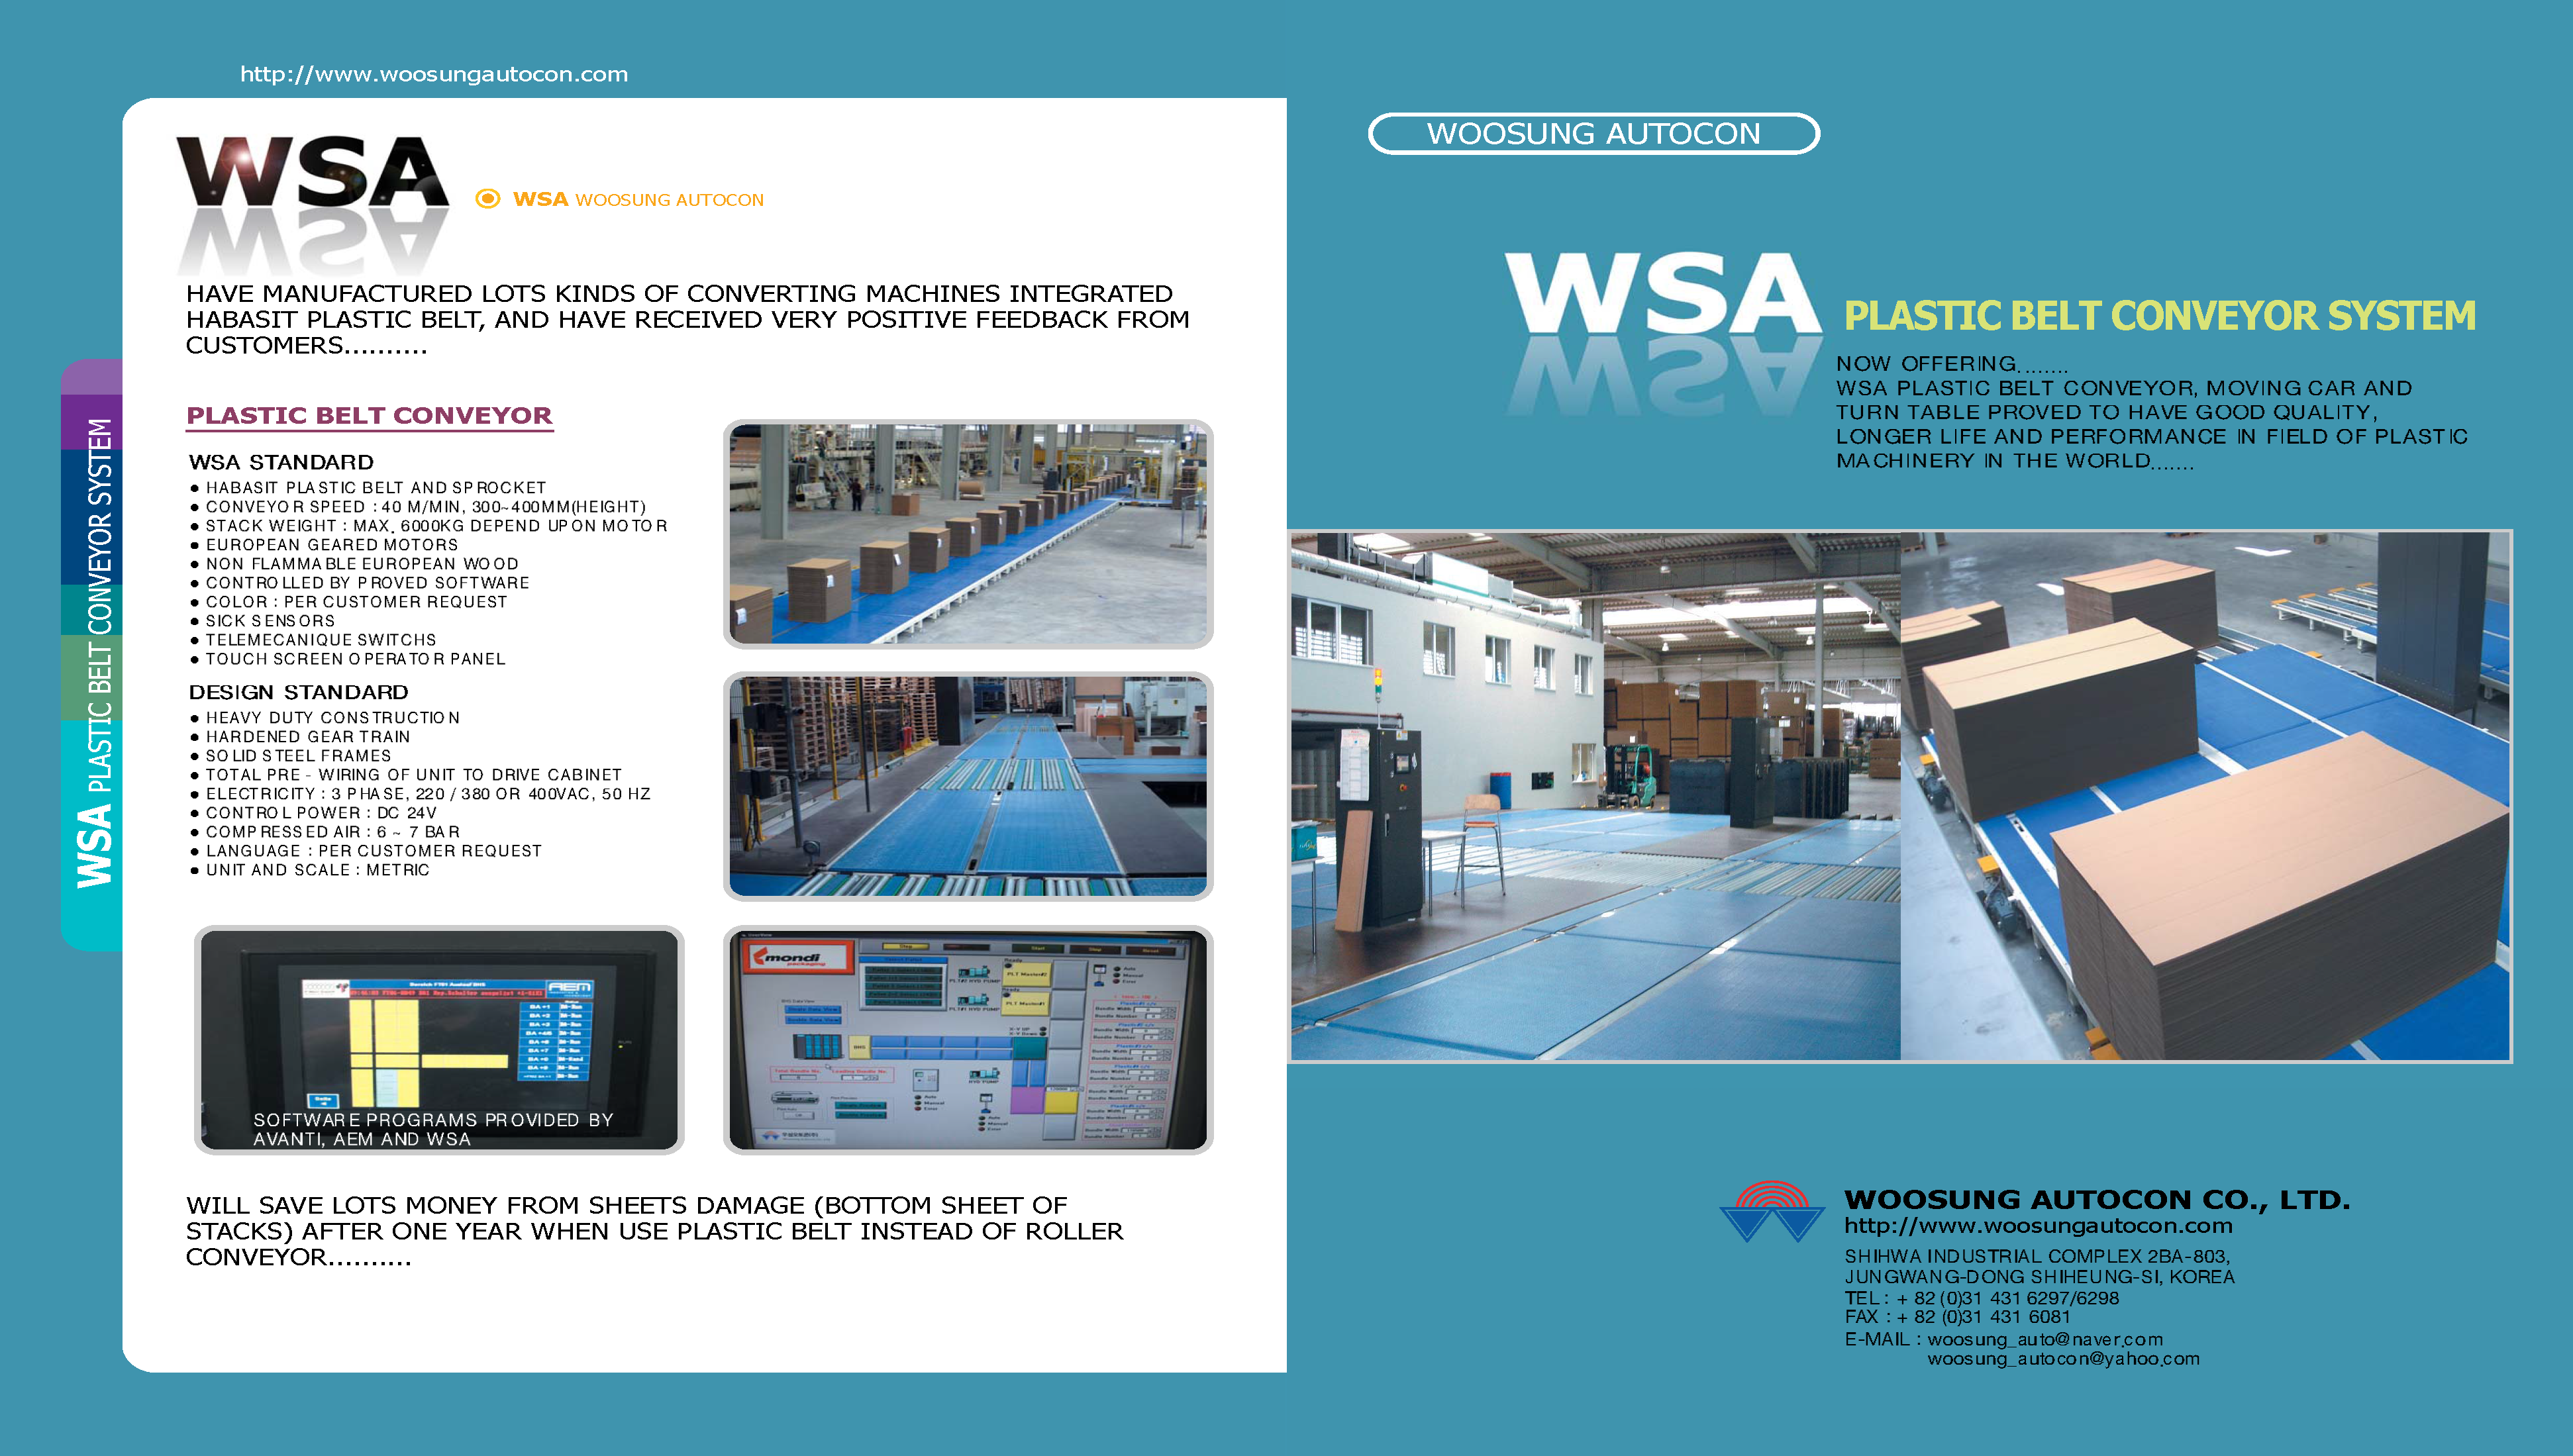 Obtendrá información ampliada sobre el Sistema completo del transportador plástico WSA en el folleto.